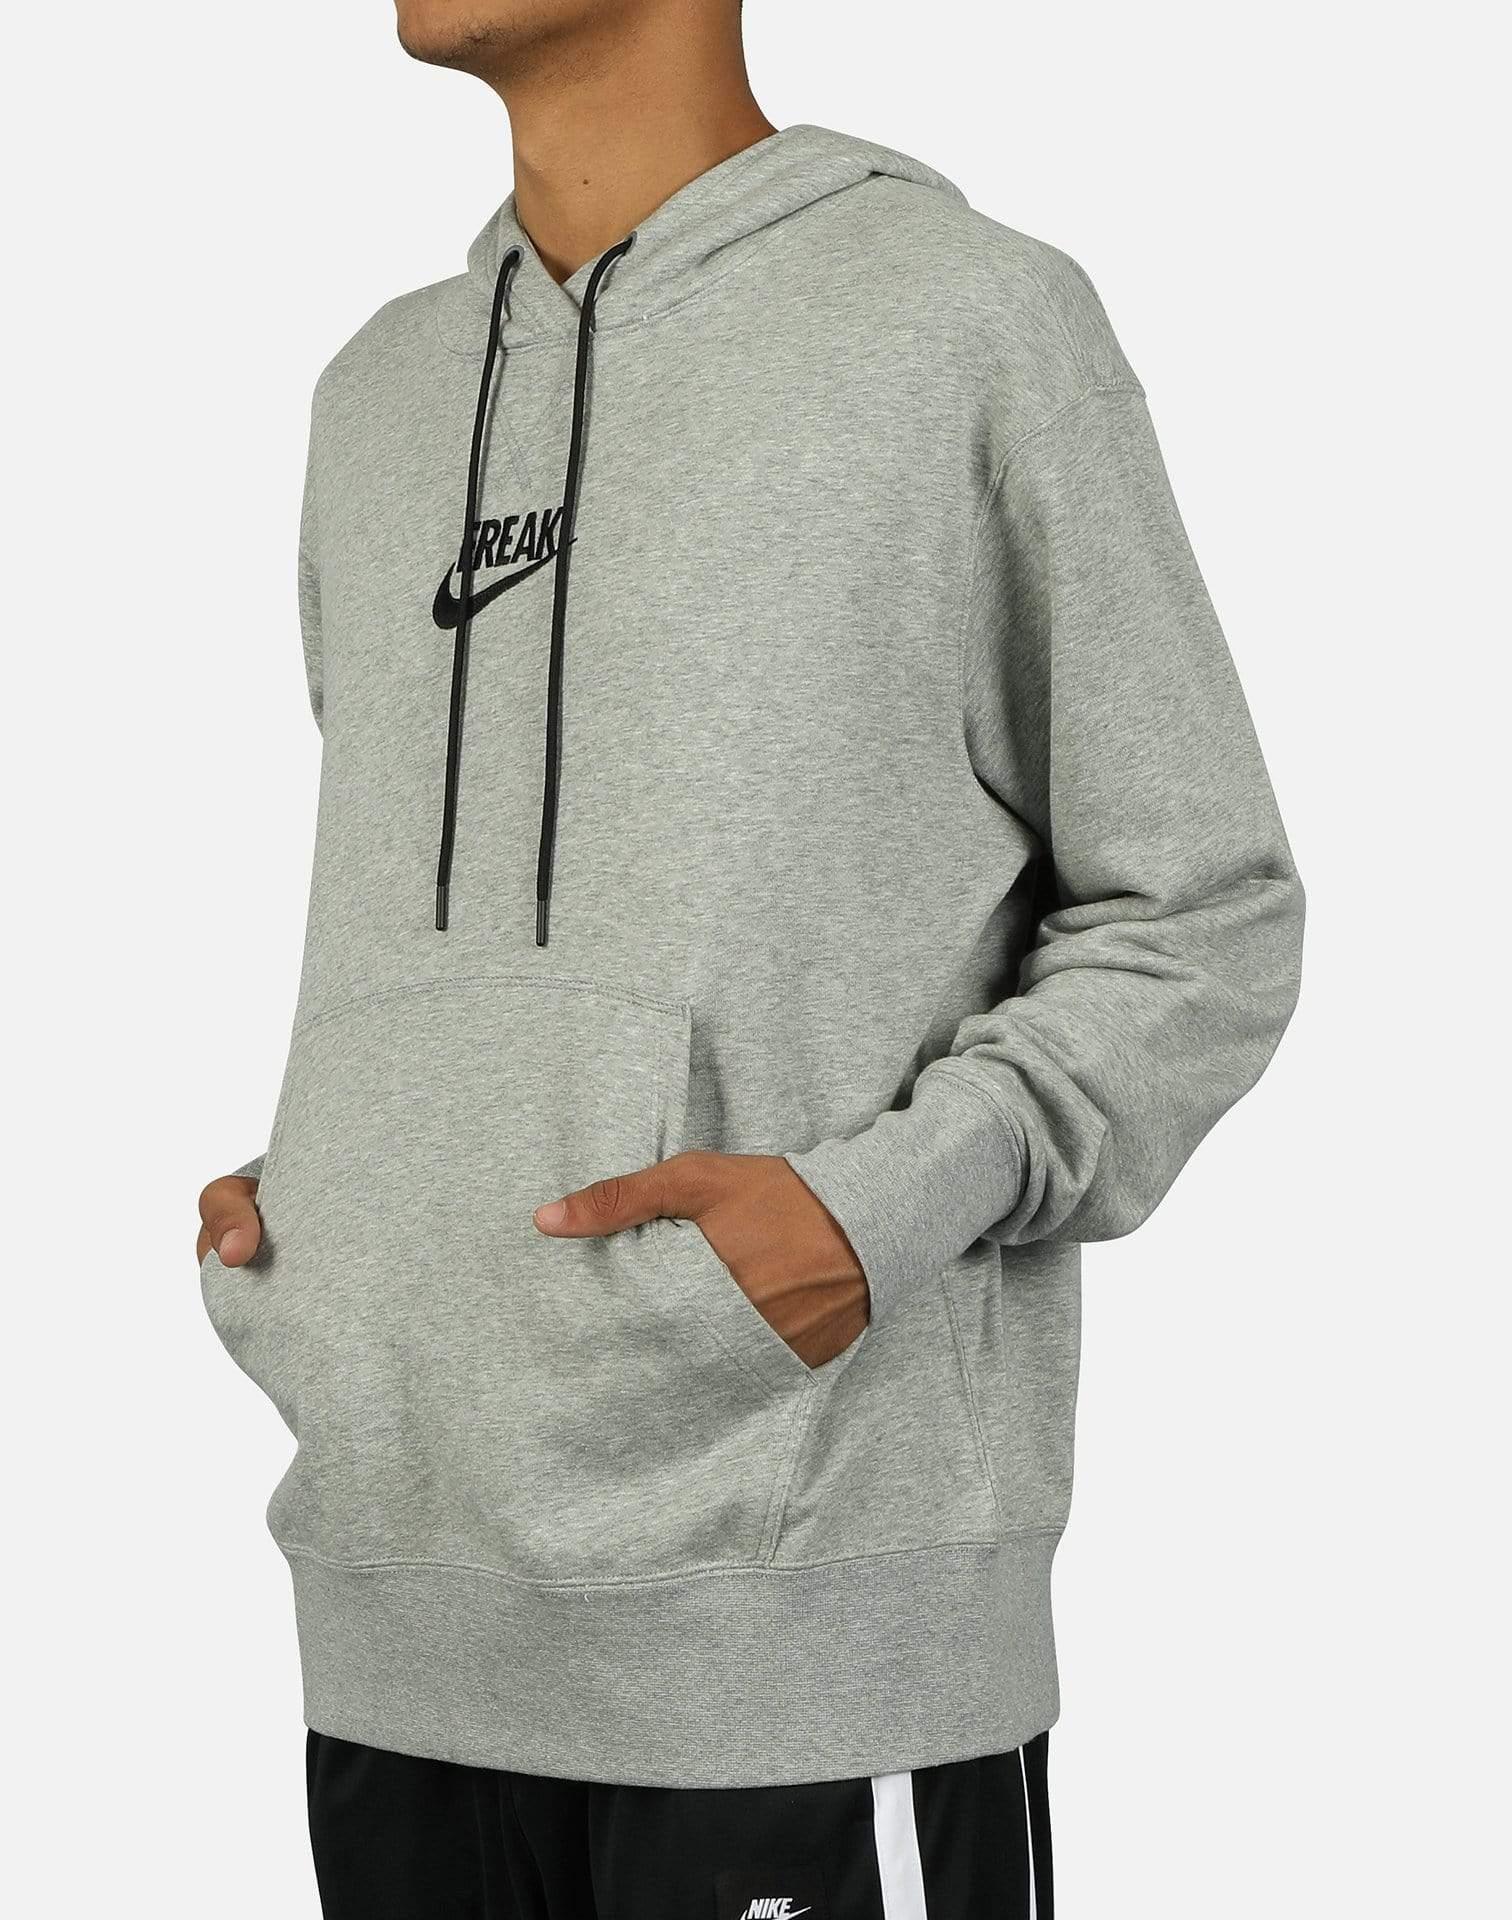 Nike Giannis 'freak' Hoodie in Grey (Gray) for Men - Lyst